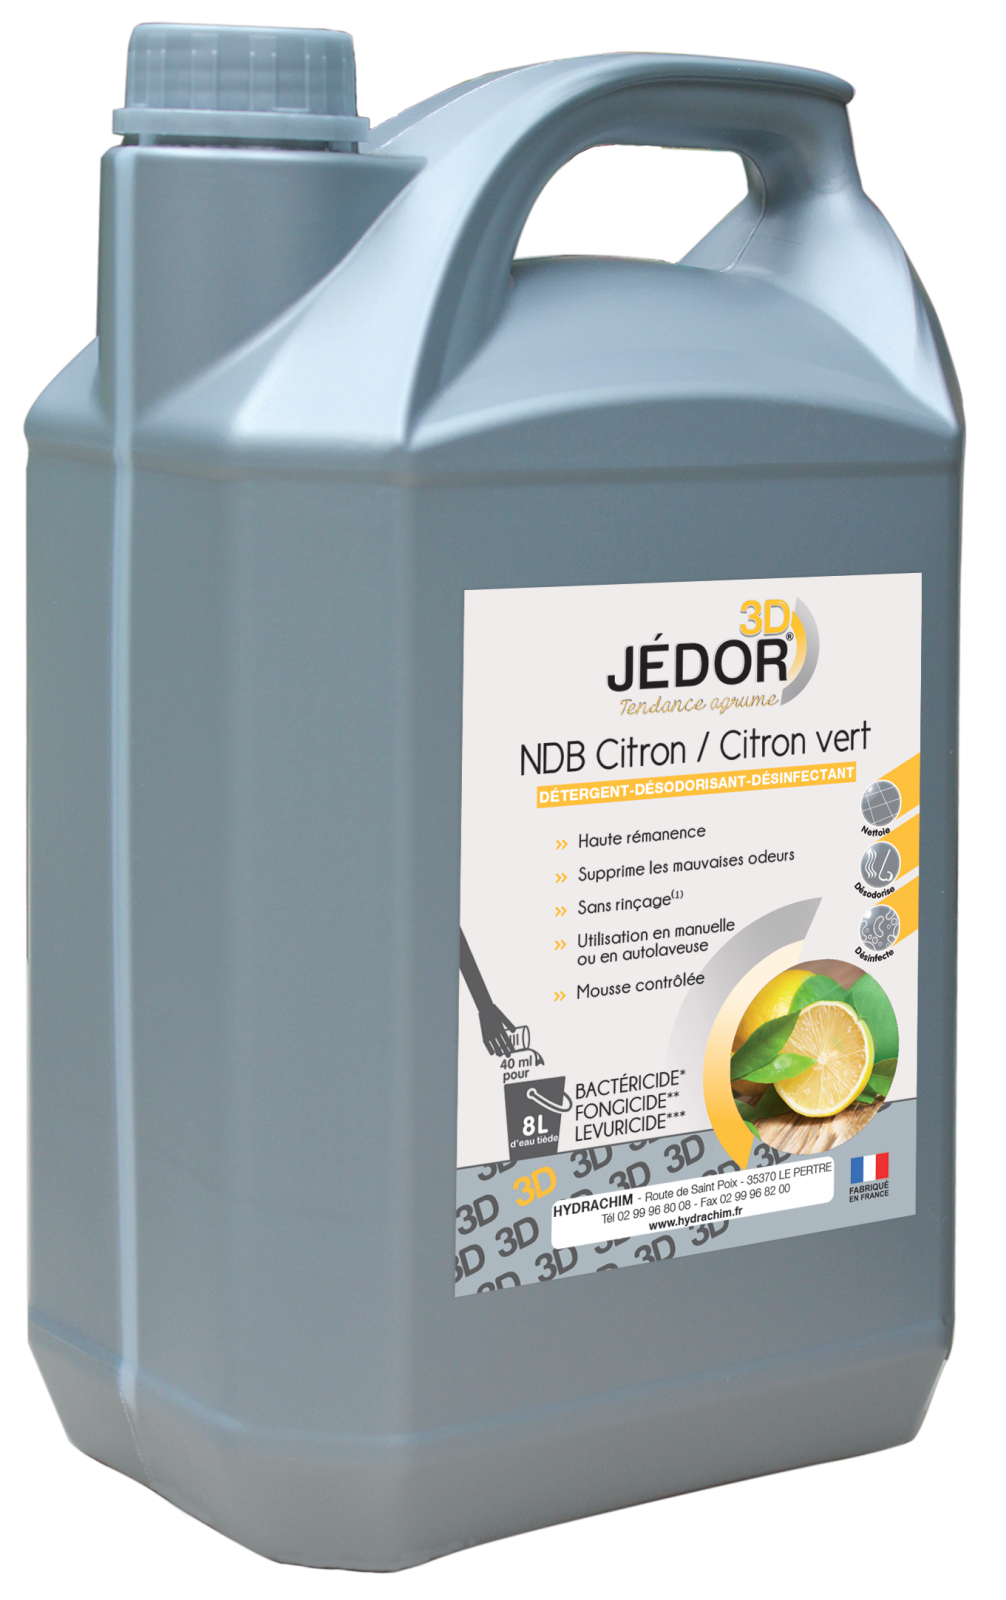 JEDOR NDB 3D -Détergent Désinfectant Désodorisant - 5L